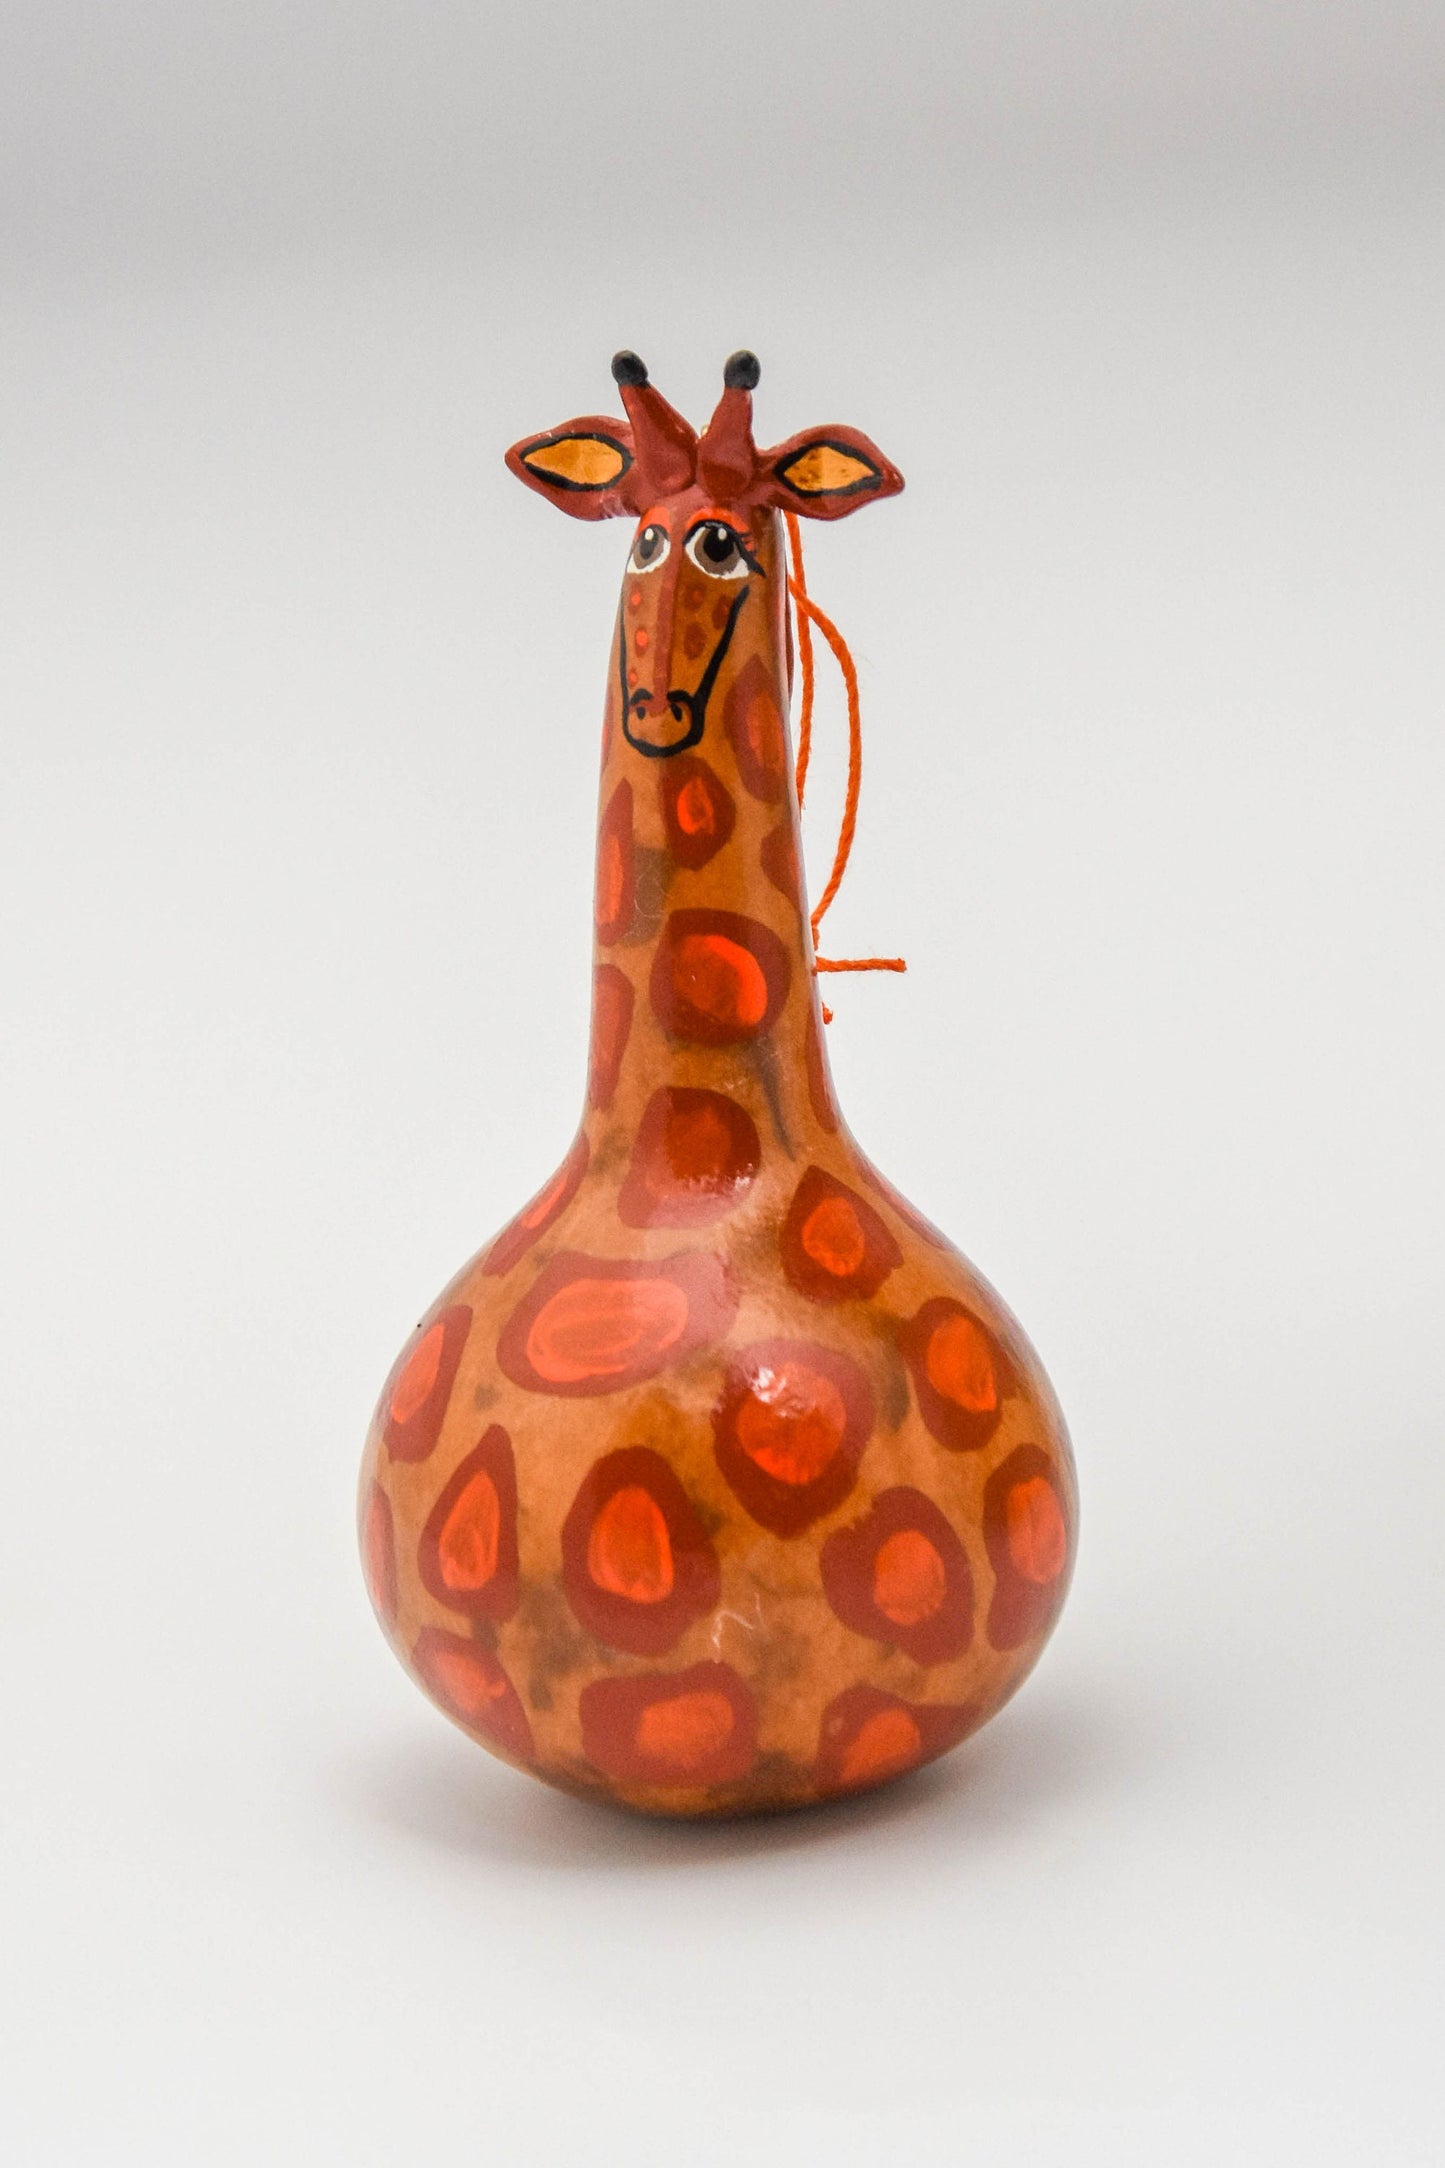 Giraffe Ornament - Gourd Art - Handmade - Gourdament